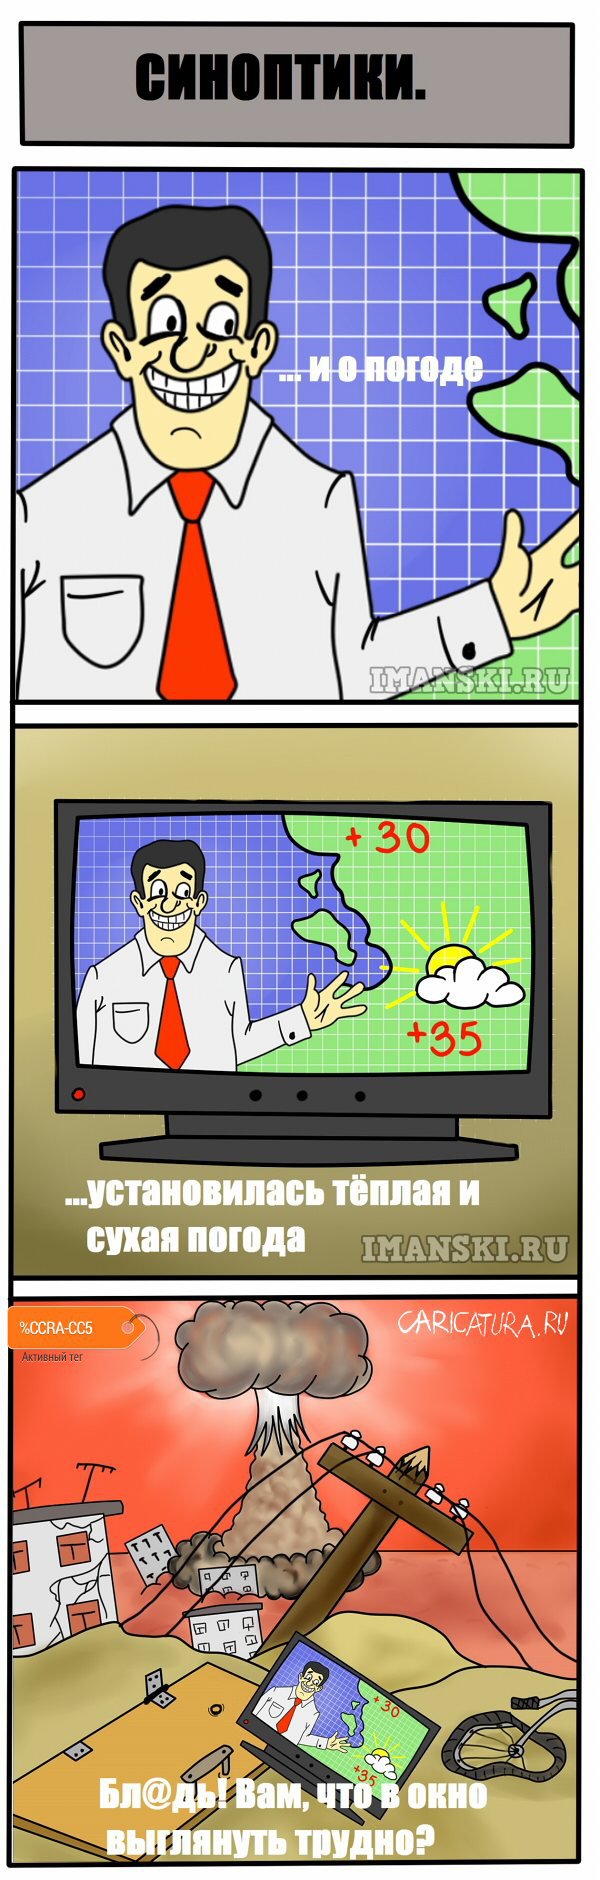 Комикс "Синоптики, они такие синоптики", Игорь Иманский